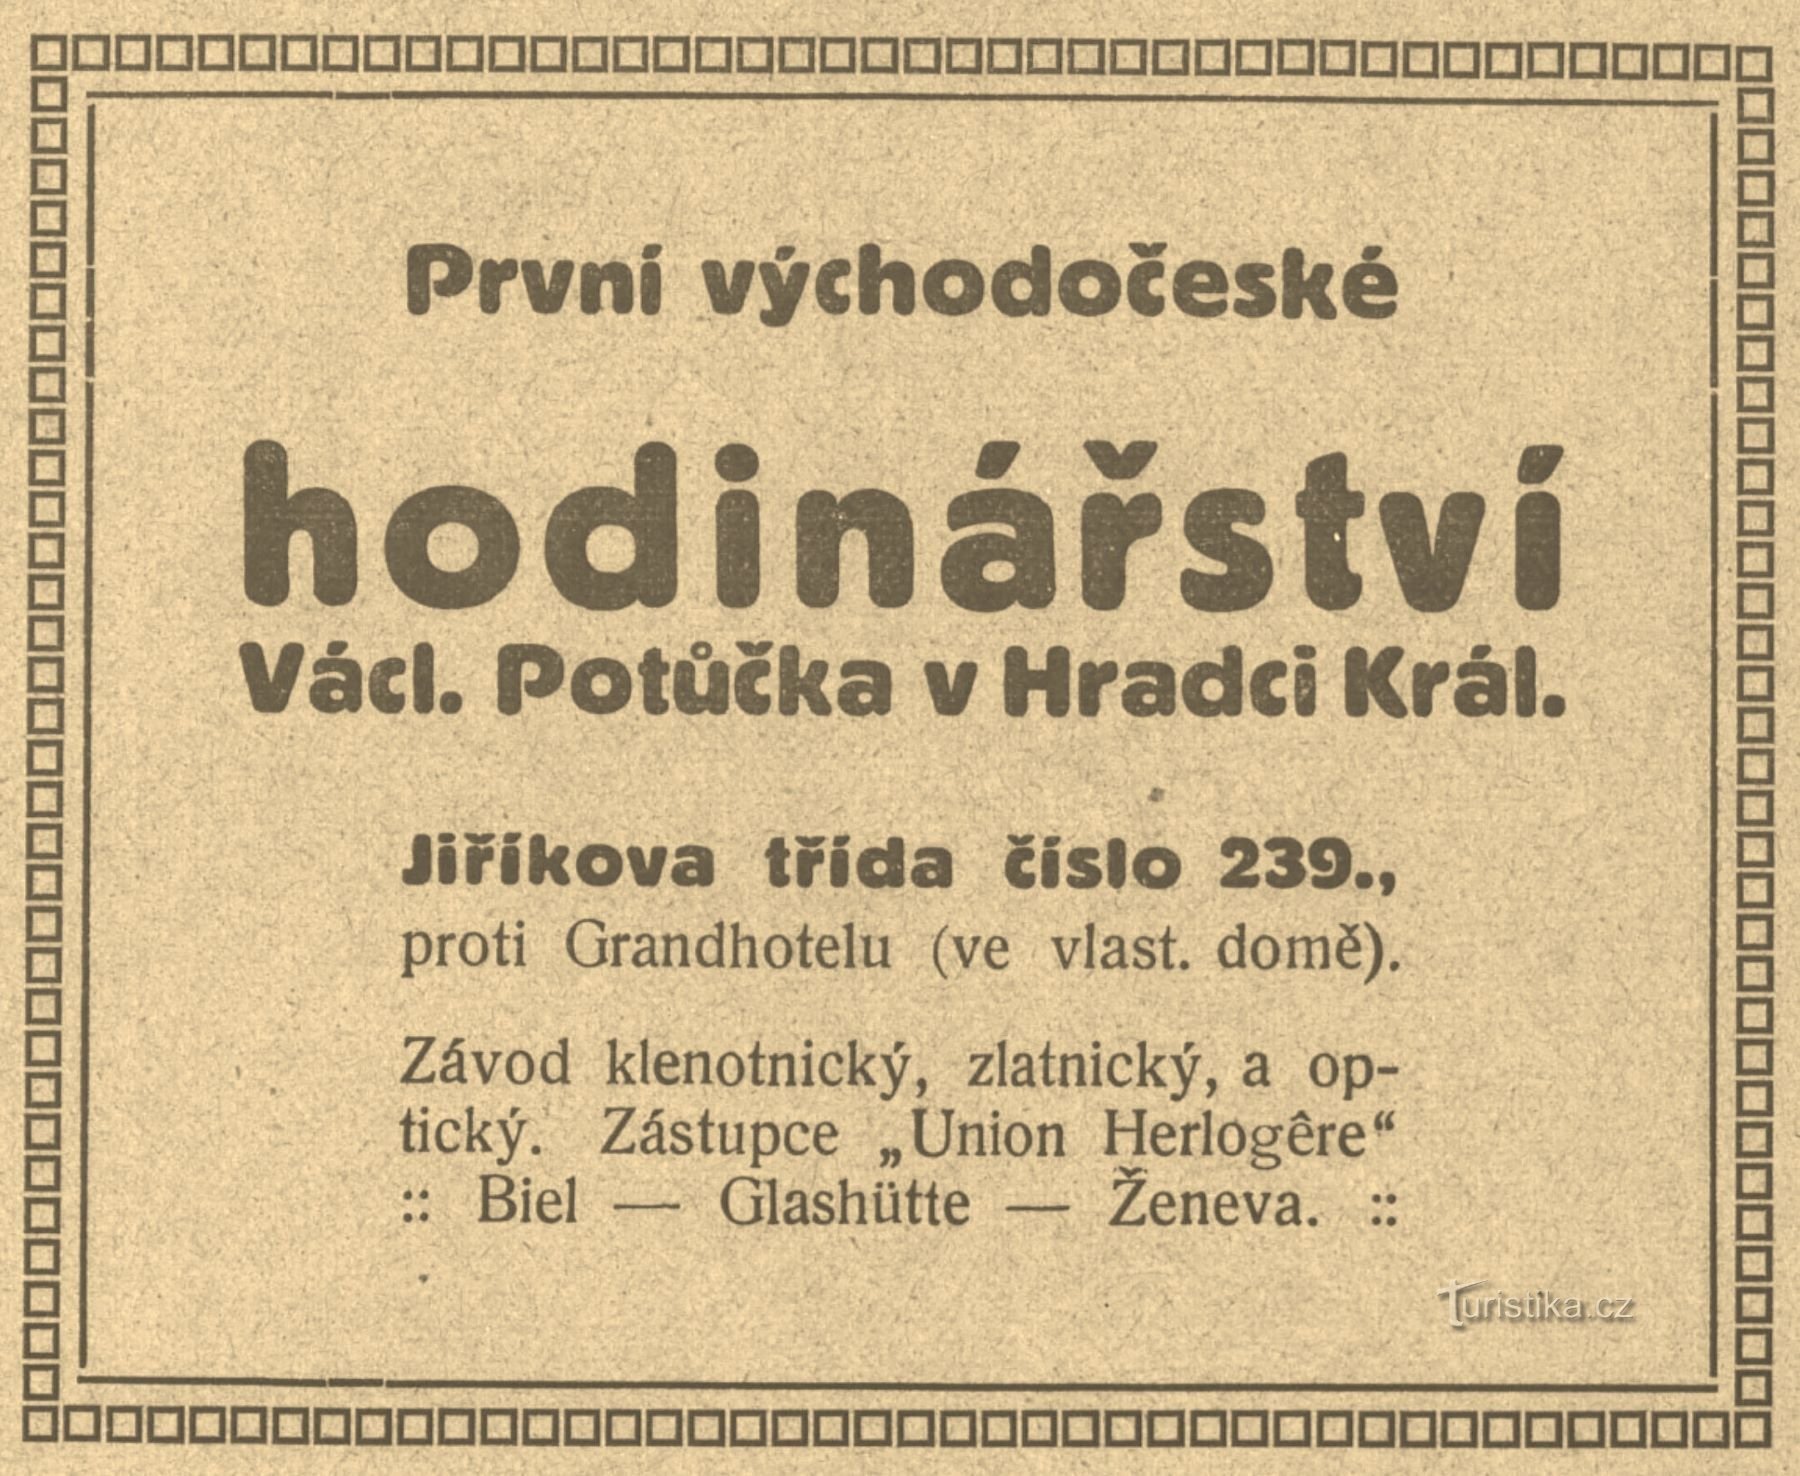 Старовинна реклама годинникової компанії Потучека 1911 року